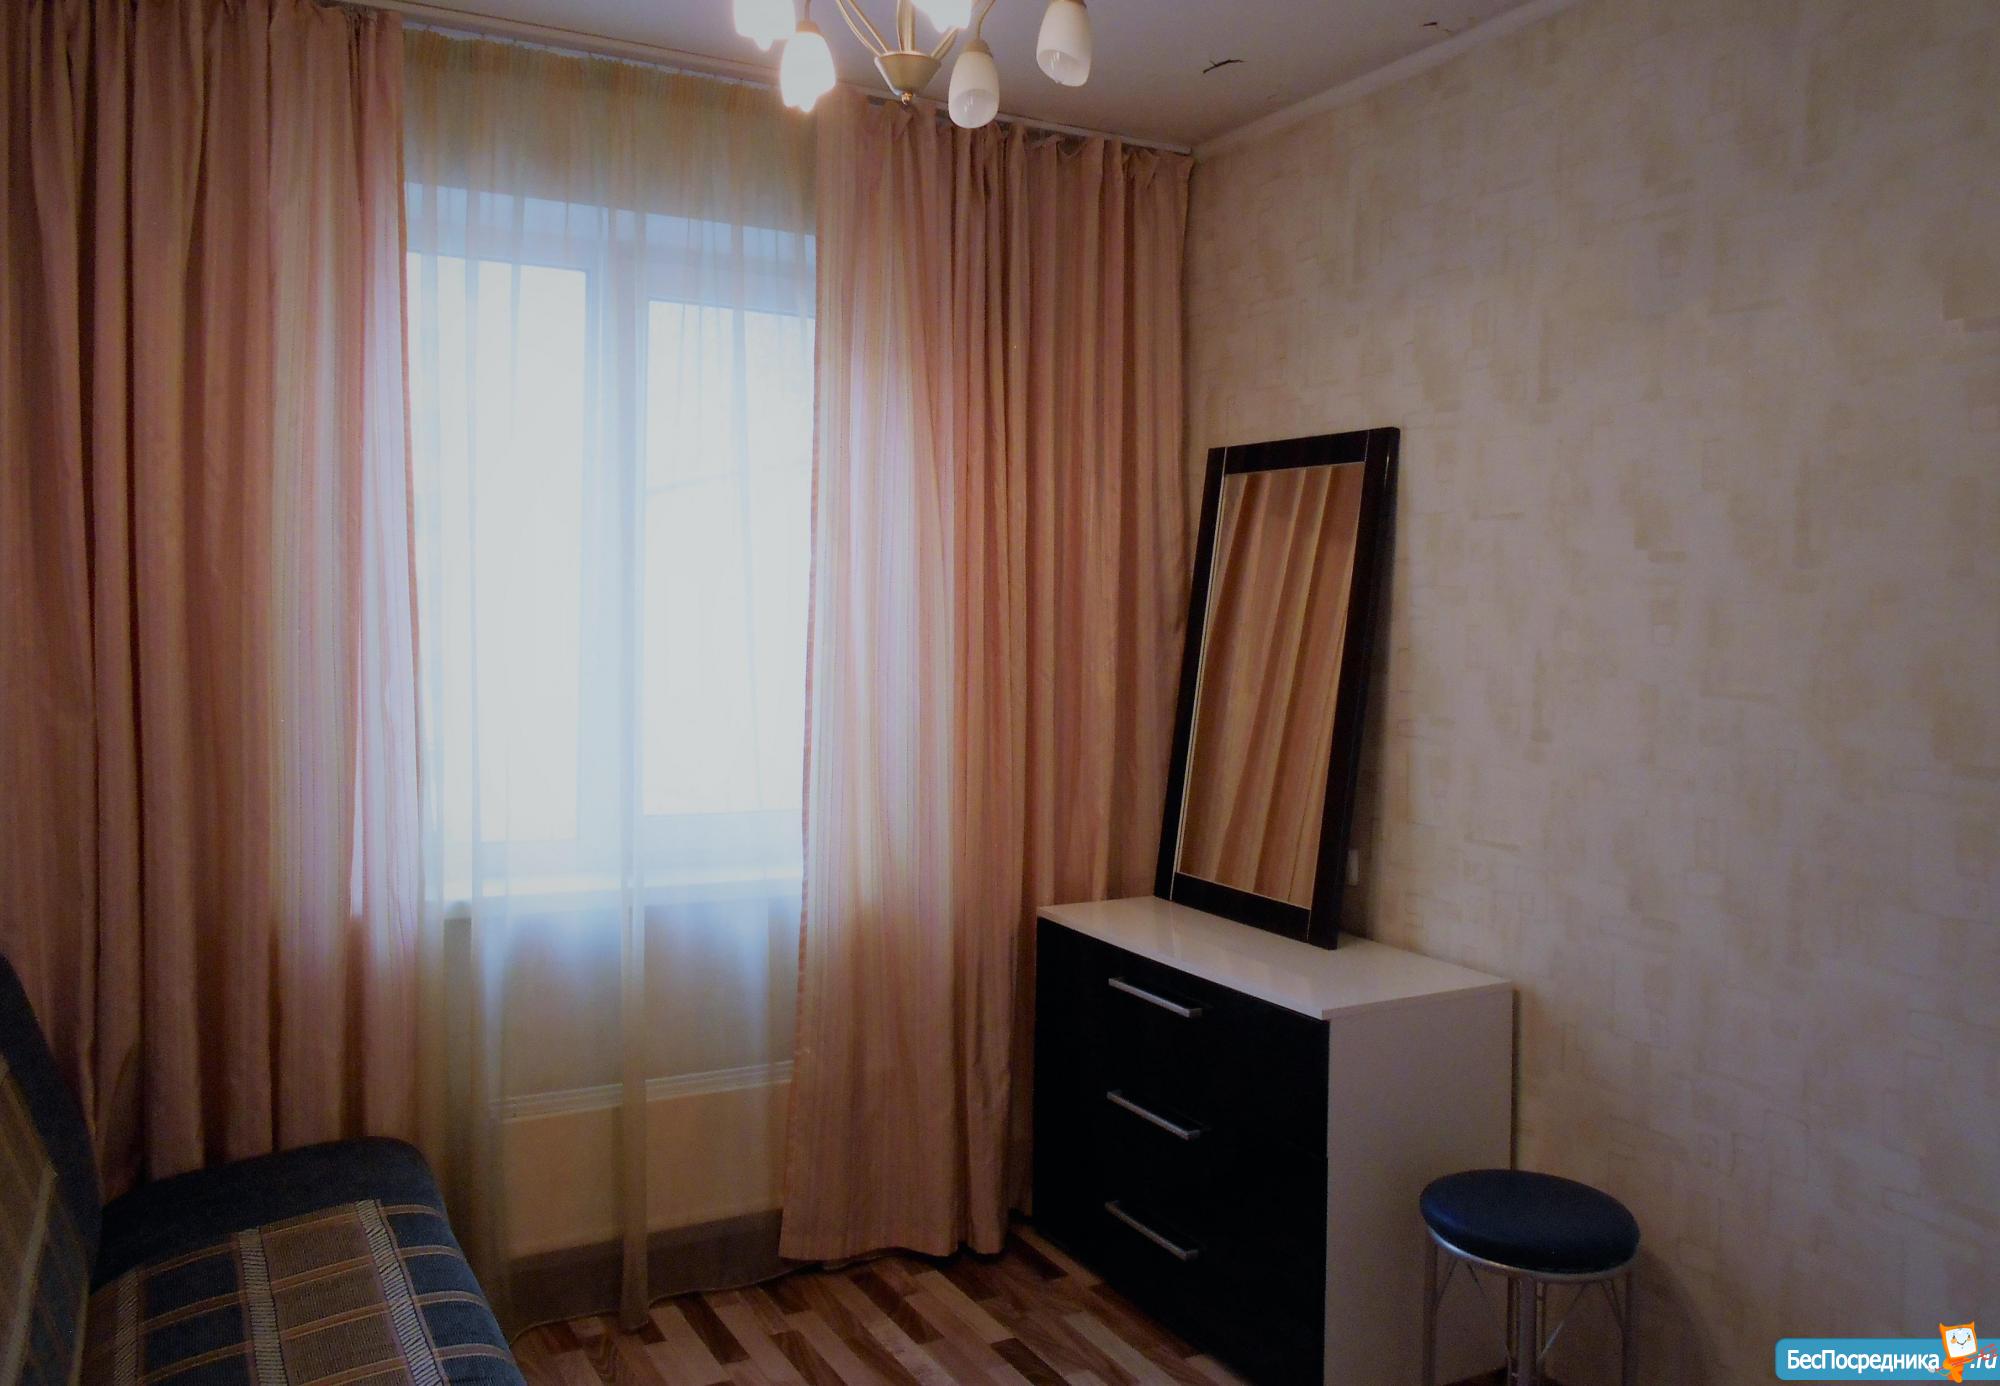 Снять 1 комнатную квартиру в Красноярске без посредников зелёная роща. Снять квартира Вязники. Снять квартиру в Вязниках с мебелью. Сколько стоит 2комнатная квартира в Вязниках.